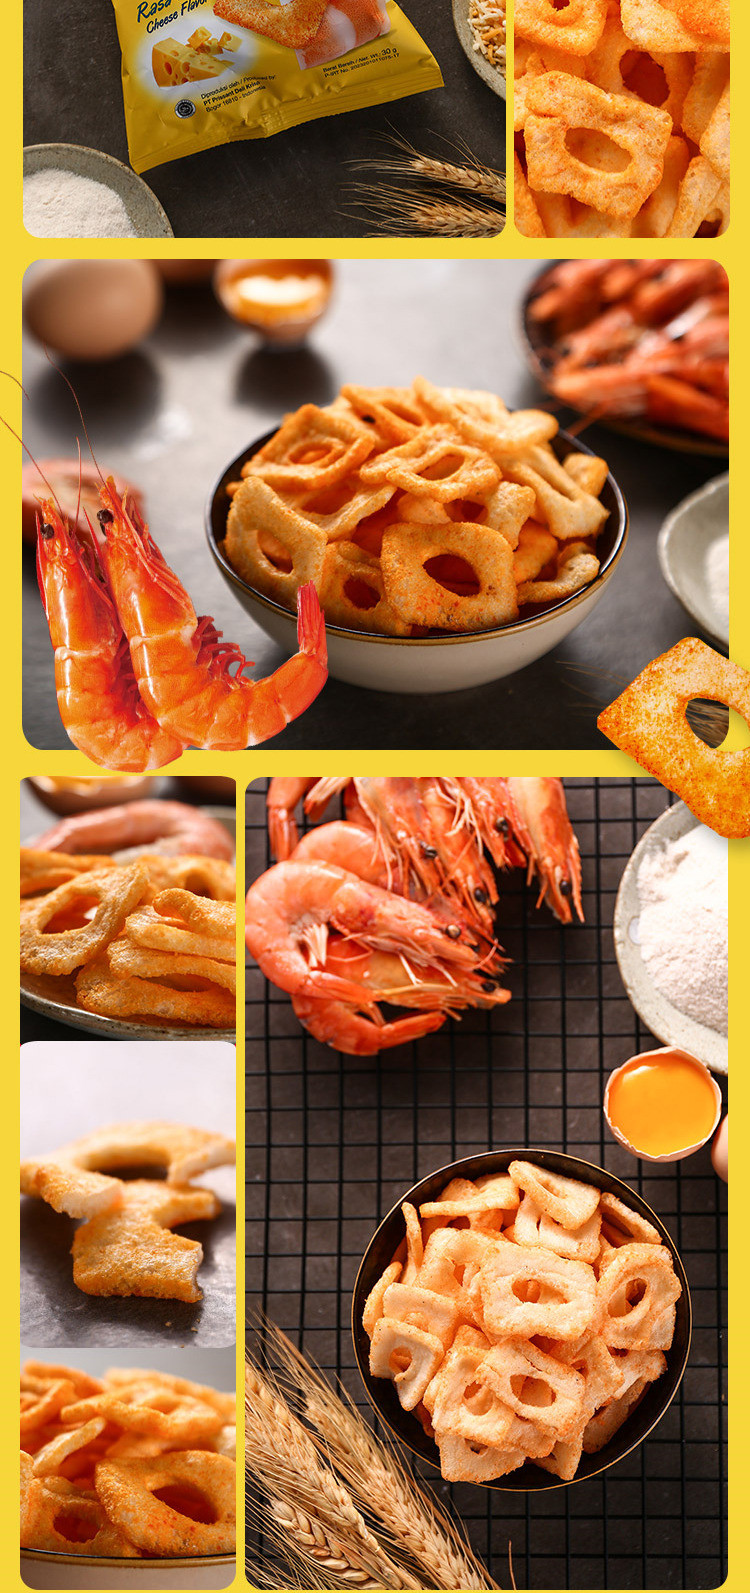 印尼进口 奥嘉莱虾片蟹片30g/袋 龙虾片/烤蟹味/原味 膨化休闲零食品多口味选择